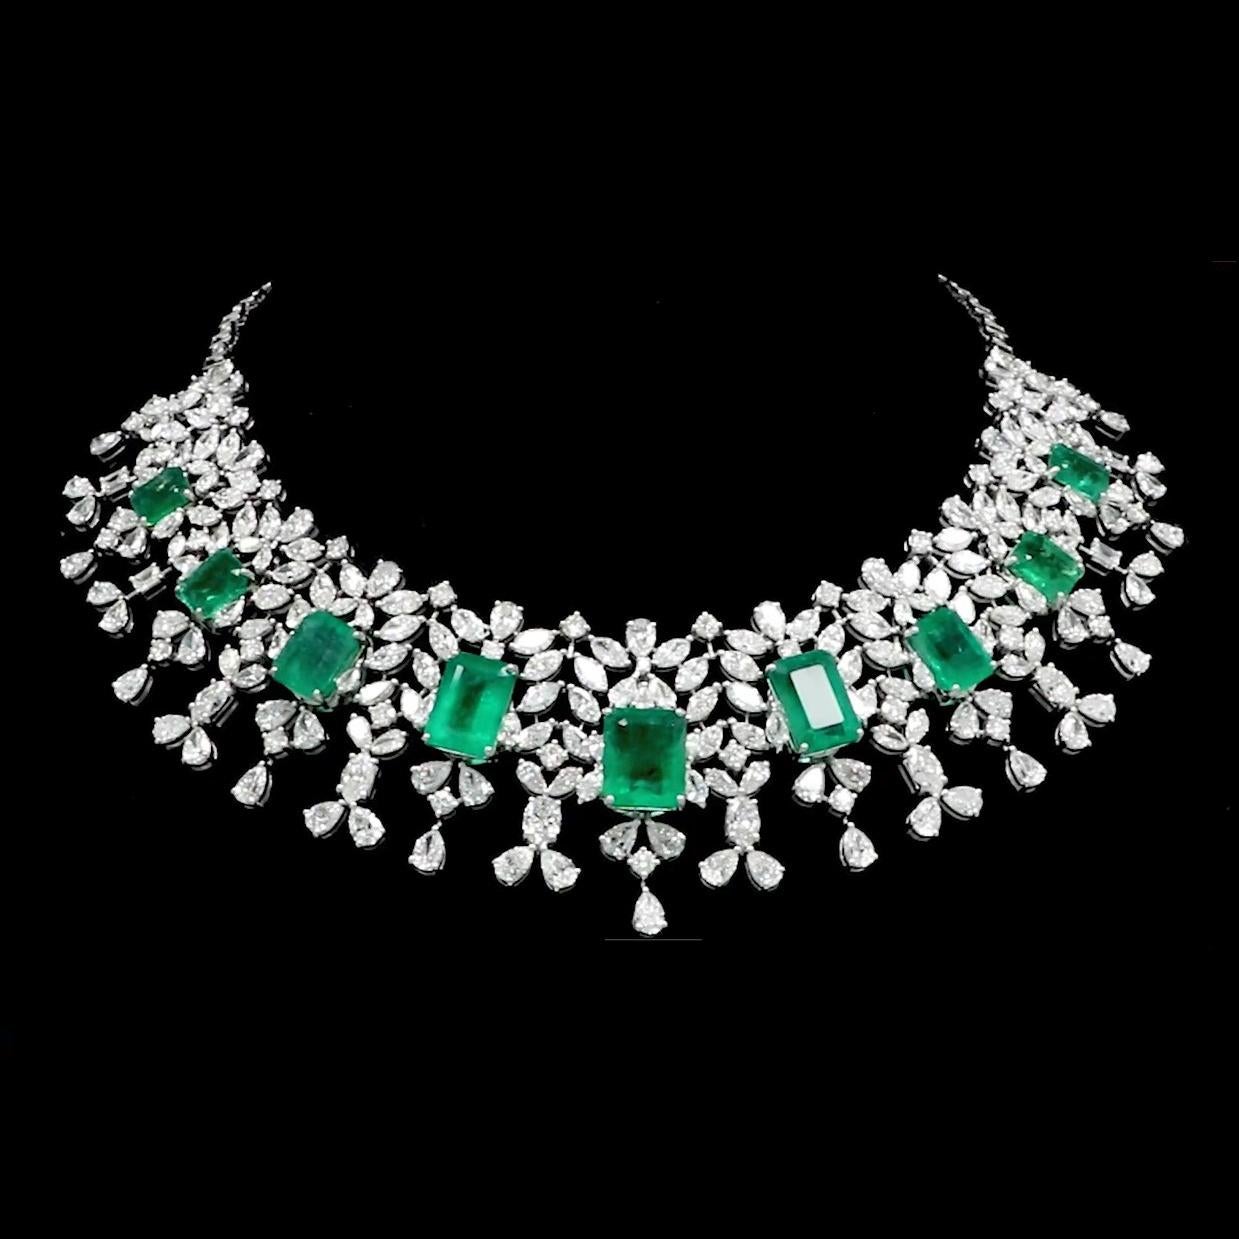 Emerald Cut Zambian Emerald Gemstone Choker Necklace Diamond 14 Karat White Gold Jewelry For Sale